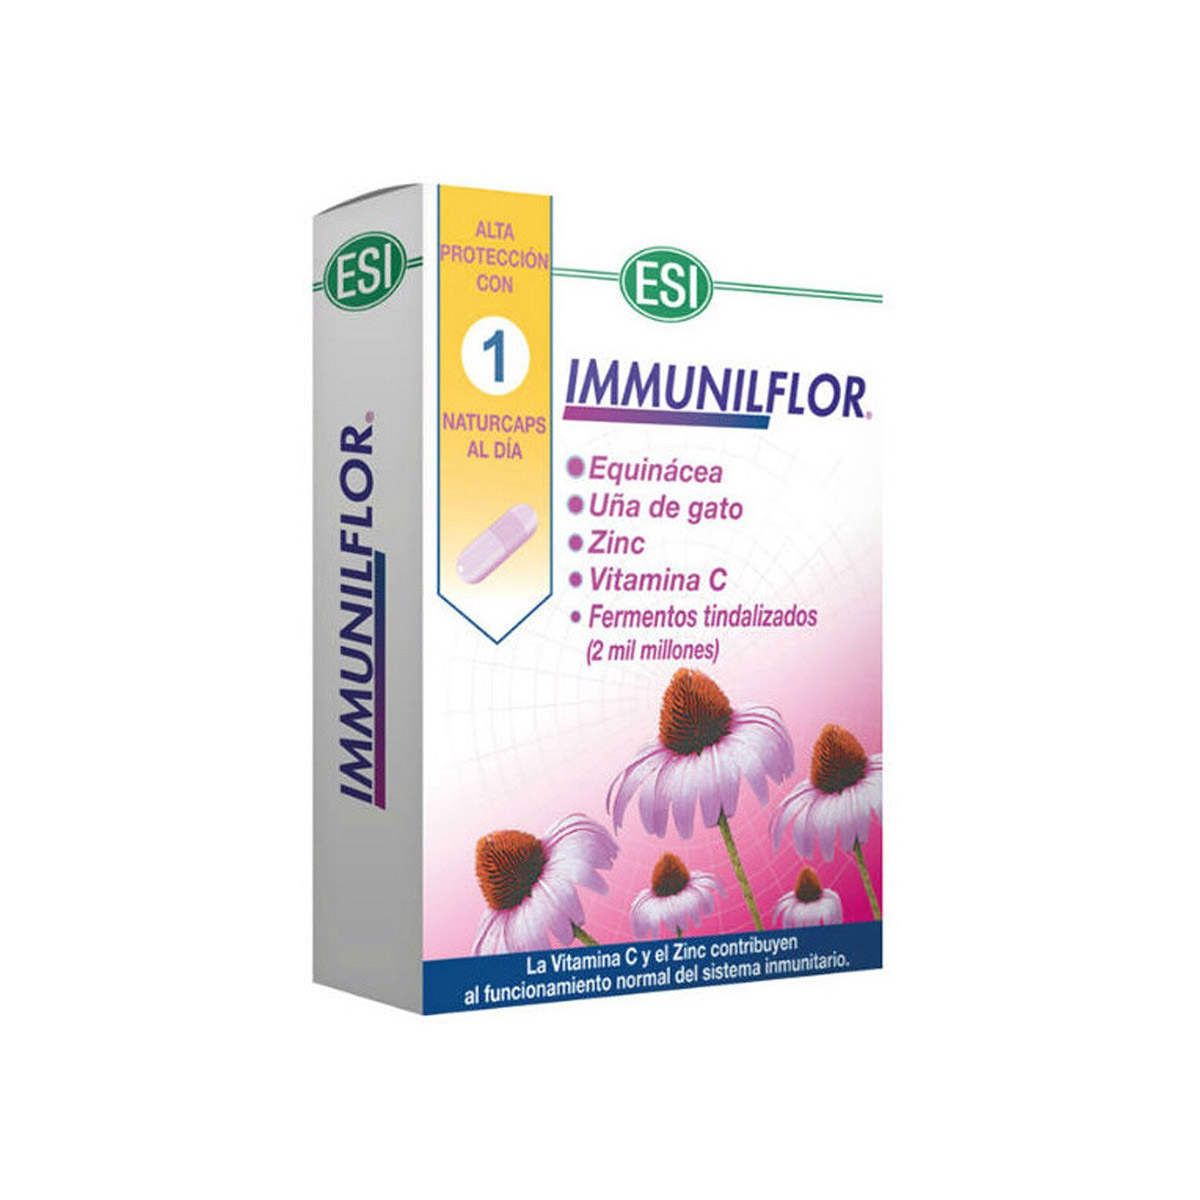 Immunilflor Naturcaps de ESI 30 comprimidos